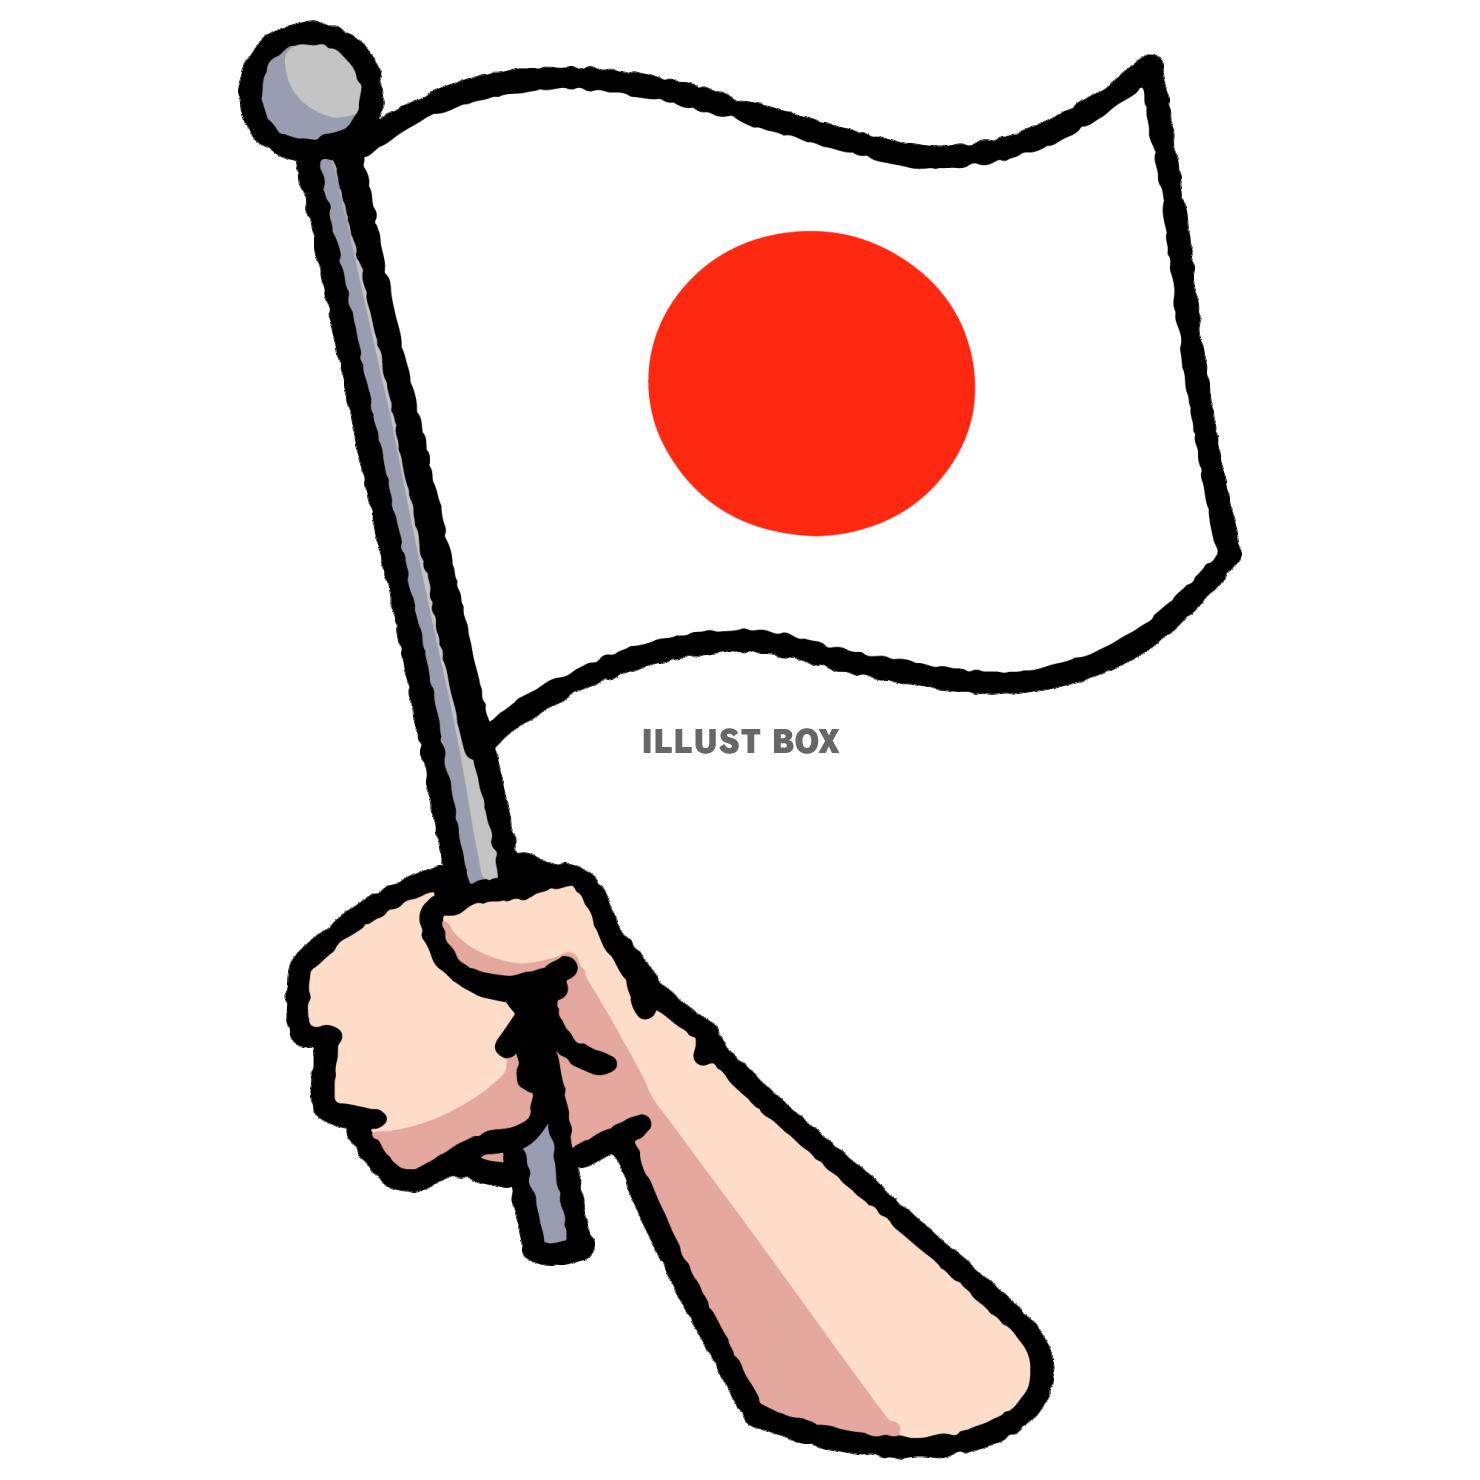 日本の国旗を手に持つイラスト